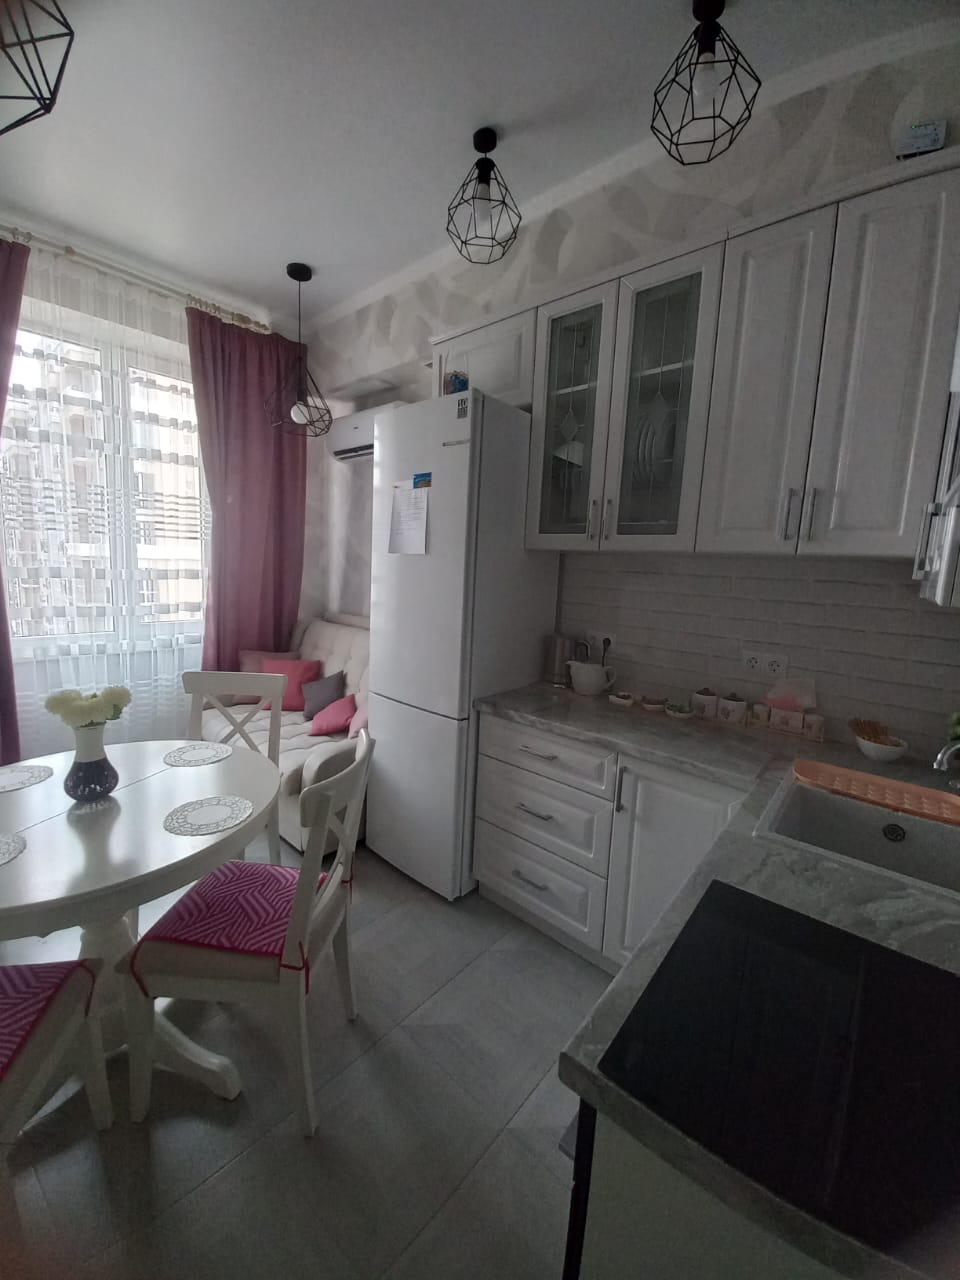 Квартира в многоквартирном доме Евродвушка ЖК Семейный в Лазаревском районе города Сочи 